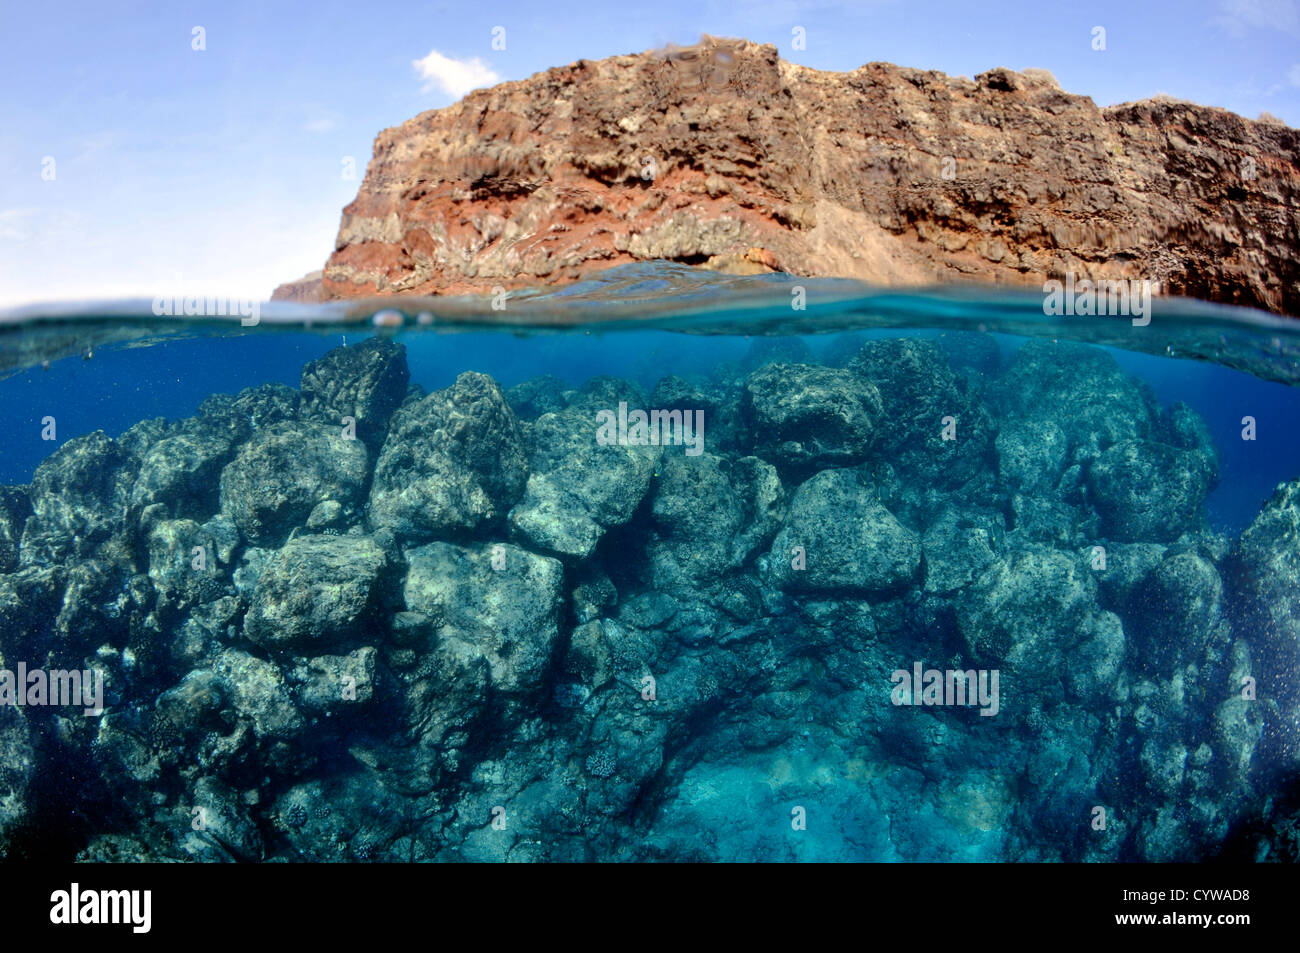 Imagen dividida de Lanai y rocas submarinas y arrecifes, Lanai, Hawai Foto de stock